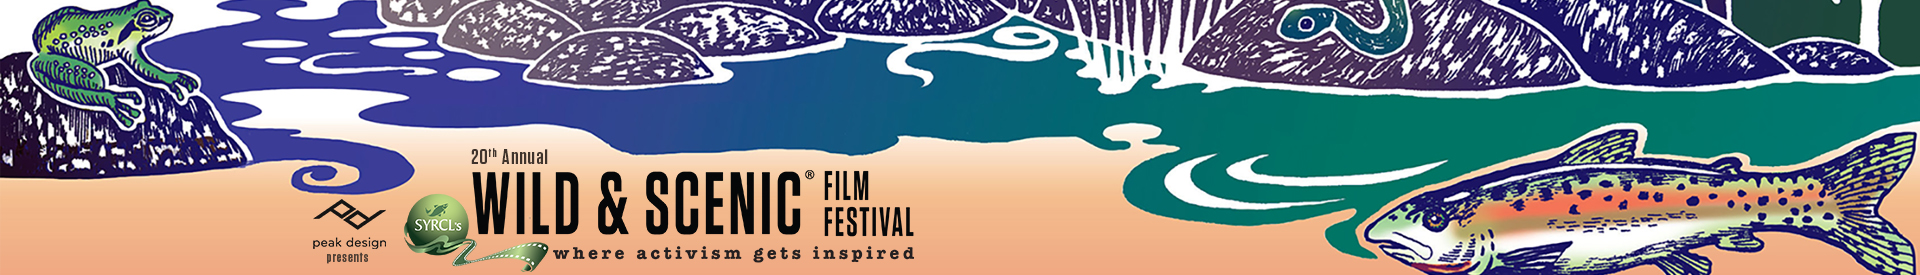 20th annual Wild & Scenic Film Festival